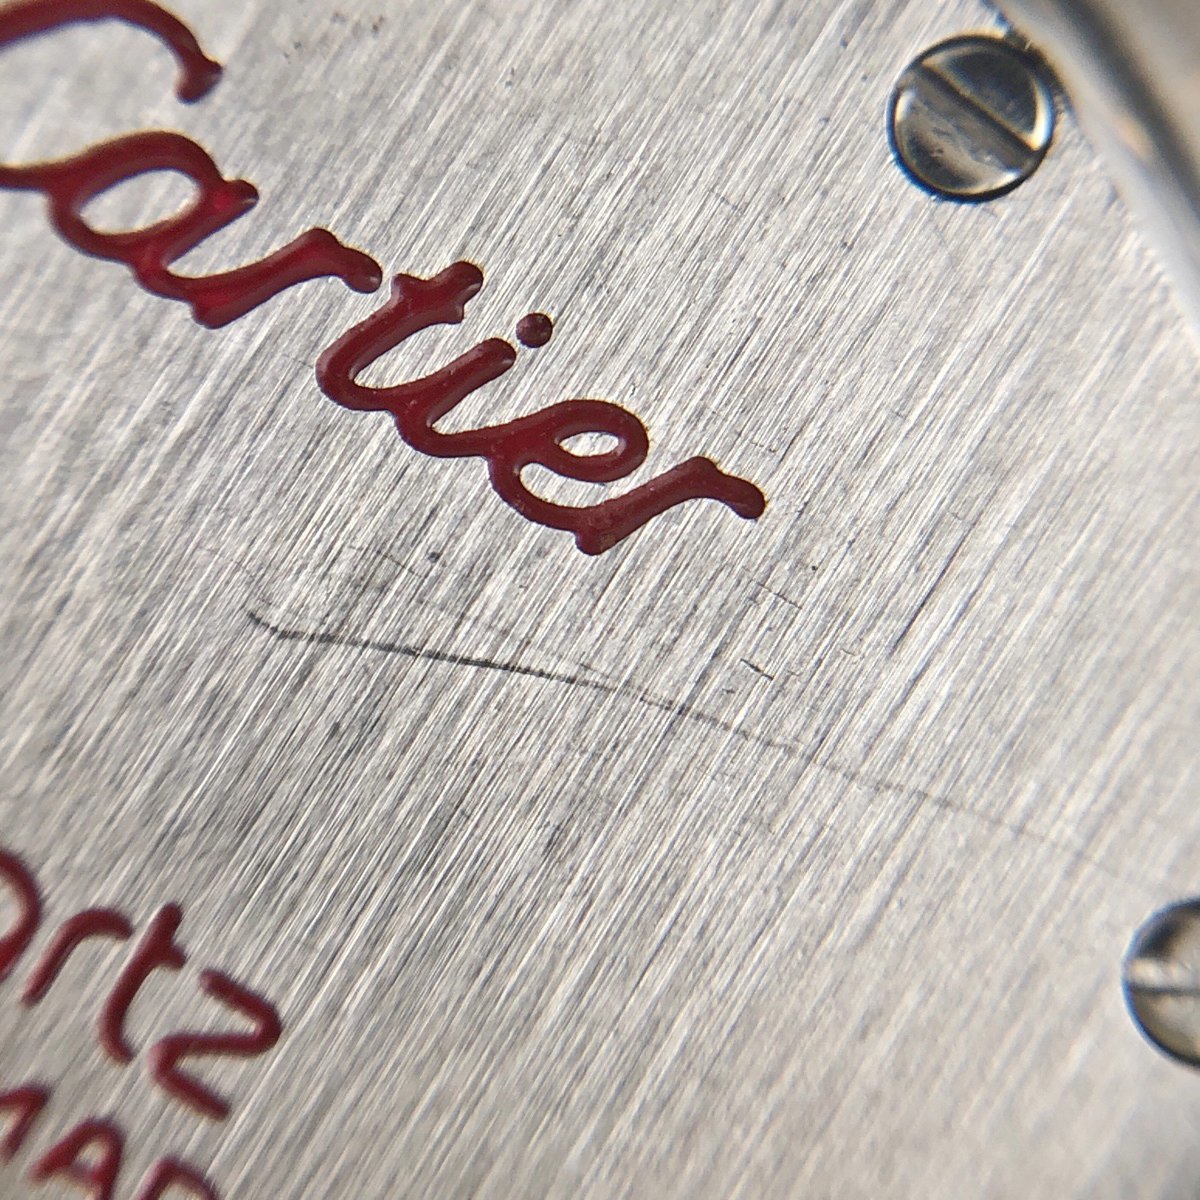  Cartier CARTIER хлеб tail Vendome SM 1 low 166920 наручные часы SS YG кварц слоновая кость женский [ б/у ]